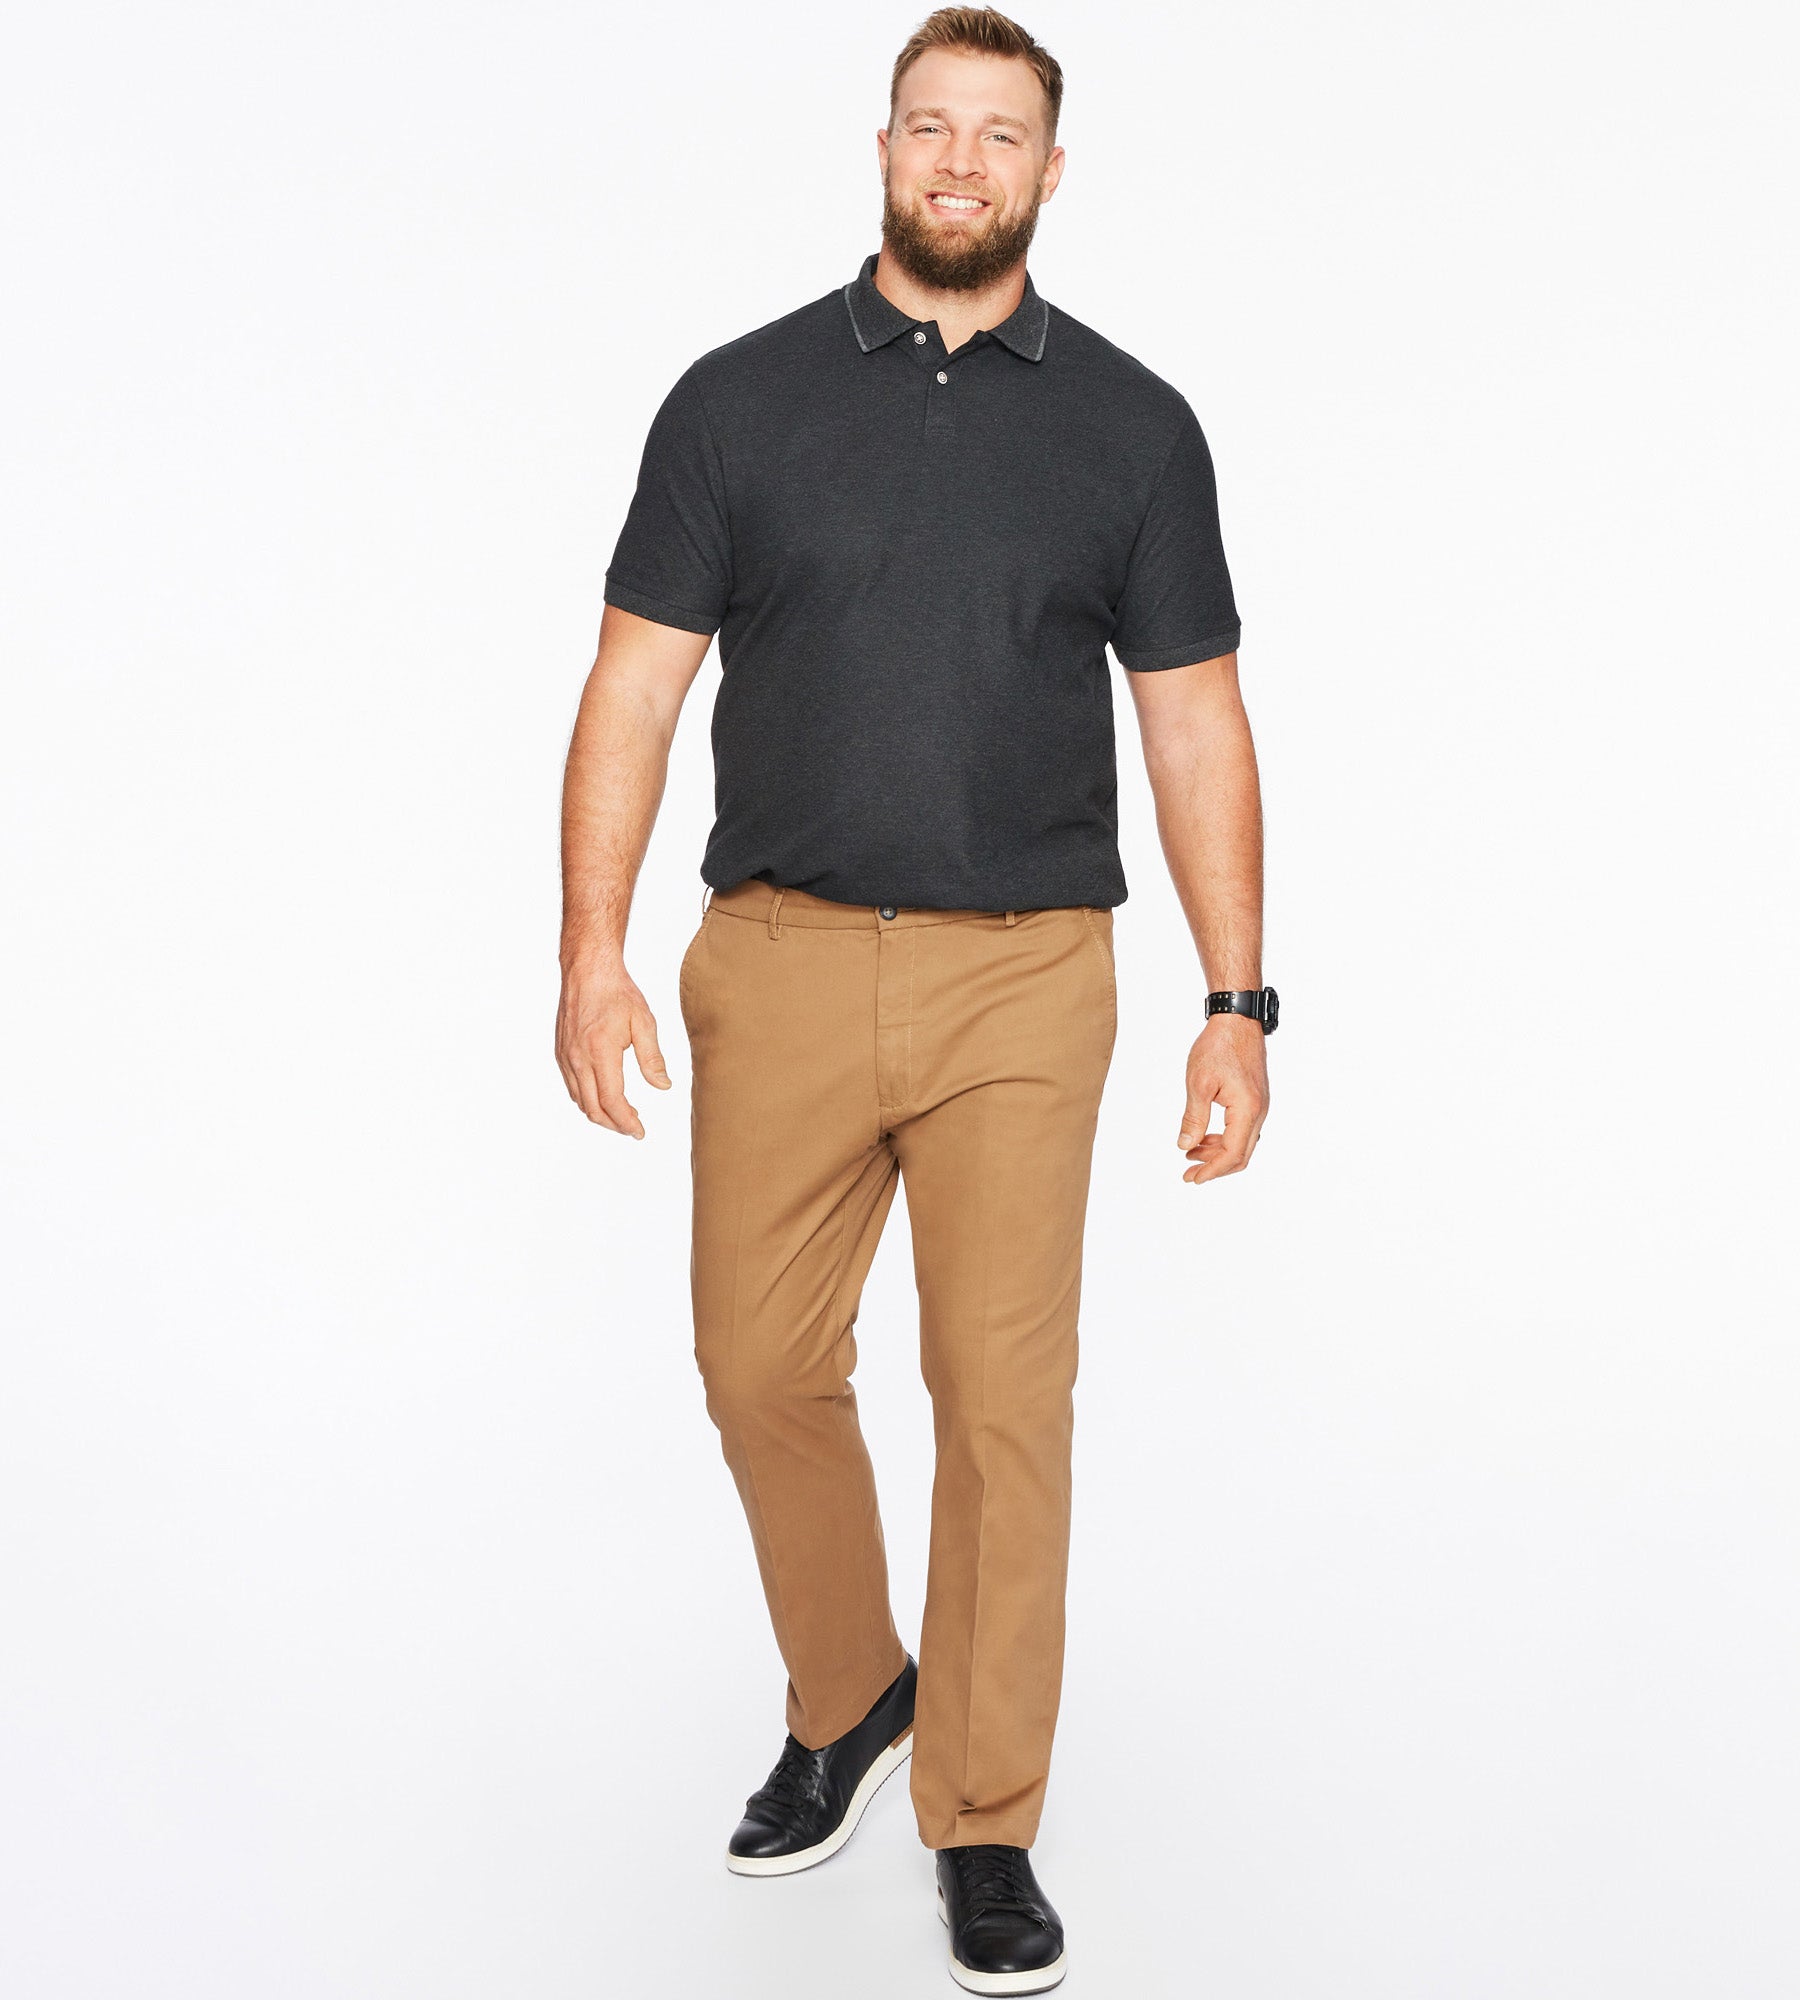 Ultimate Twill Pants – Mr. Big & Tall